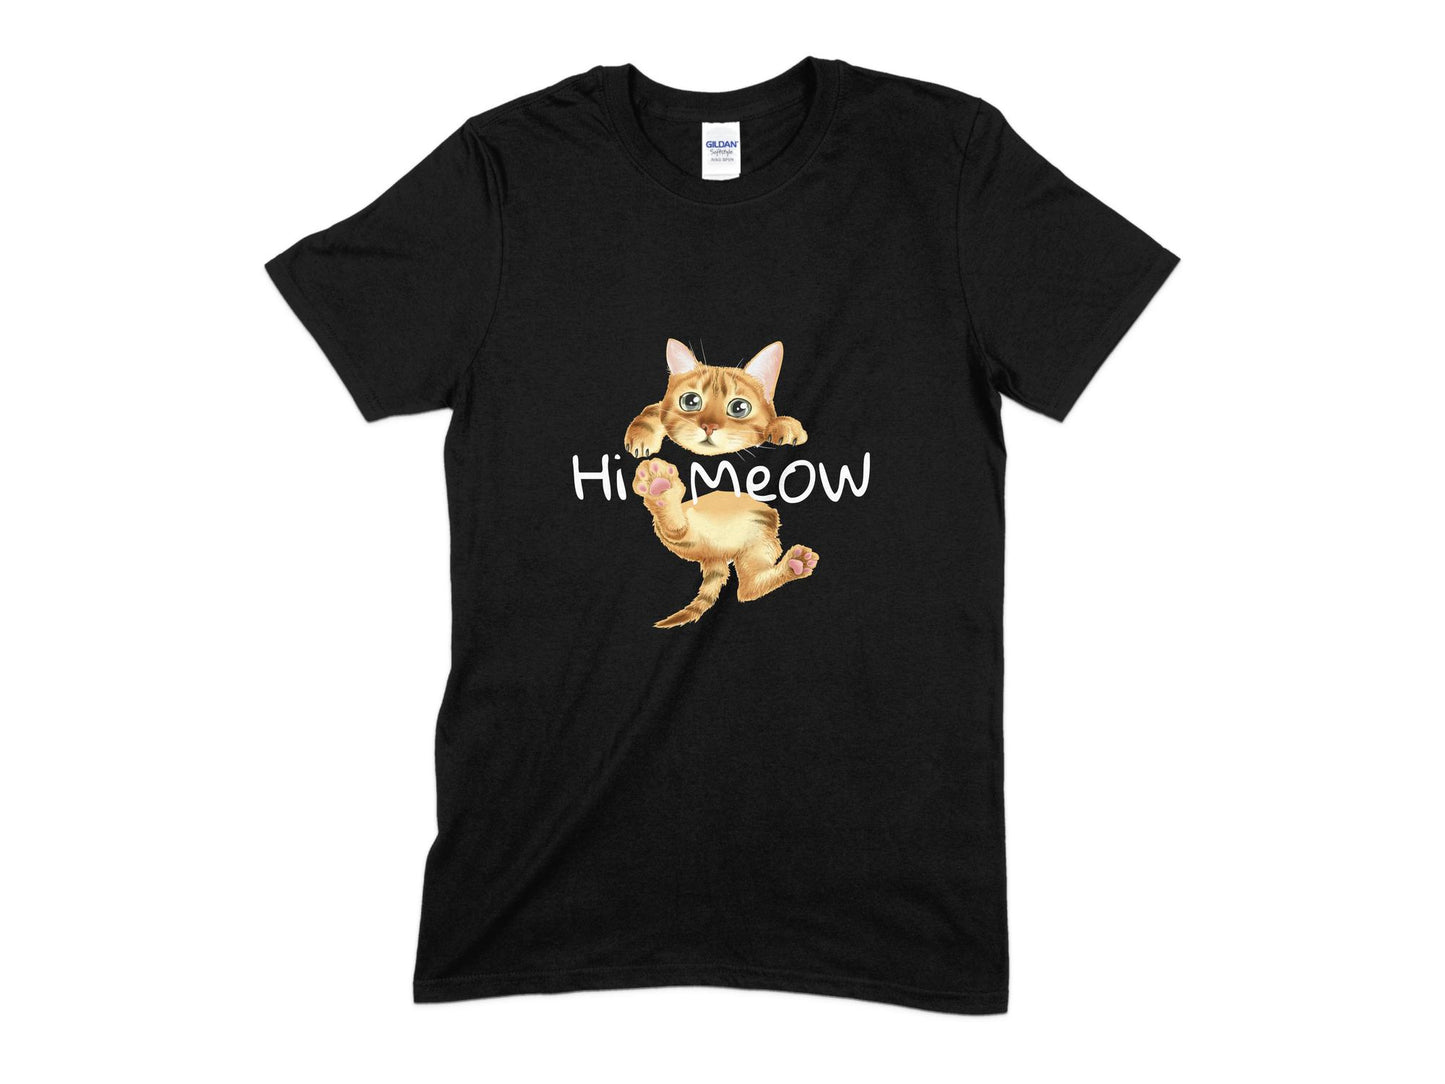 Hi Meow Cat T-Shirt, Cute Cat Shirt